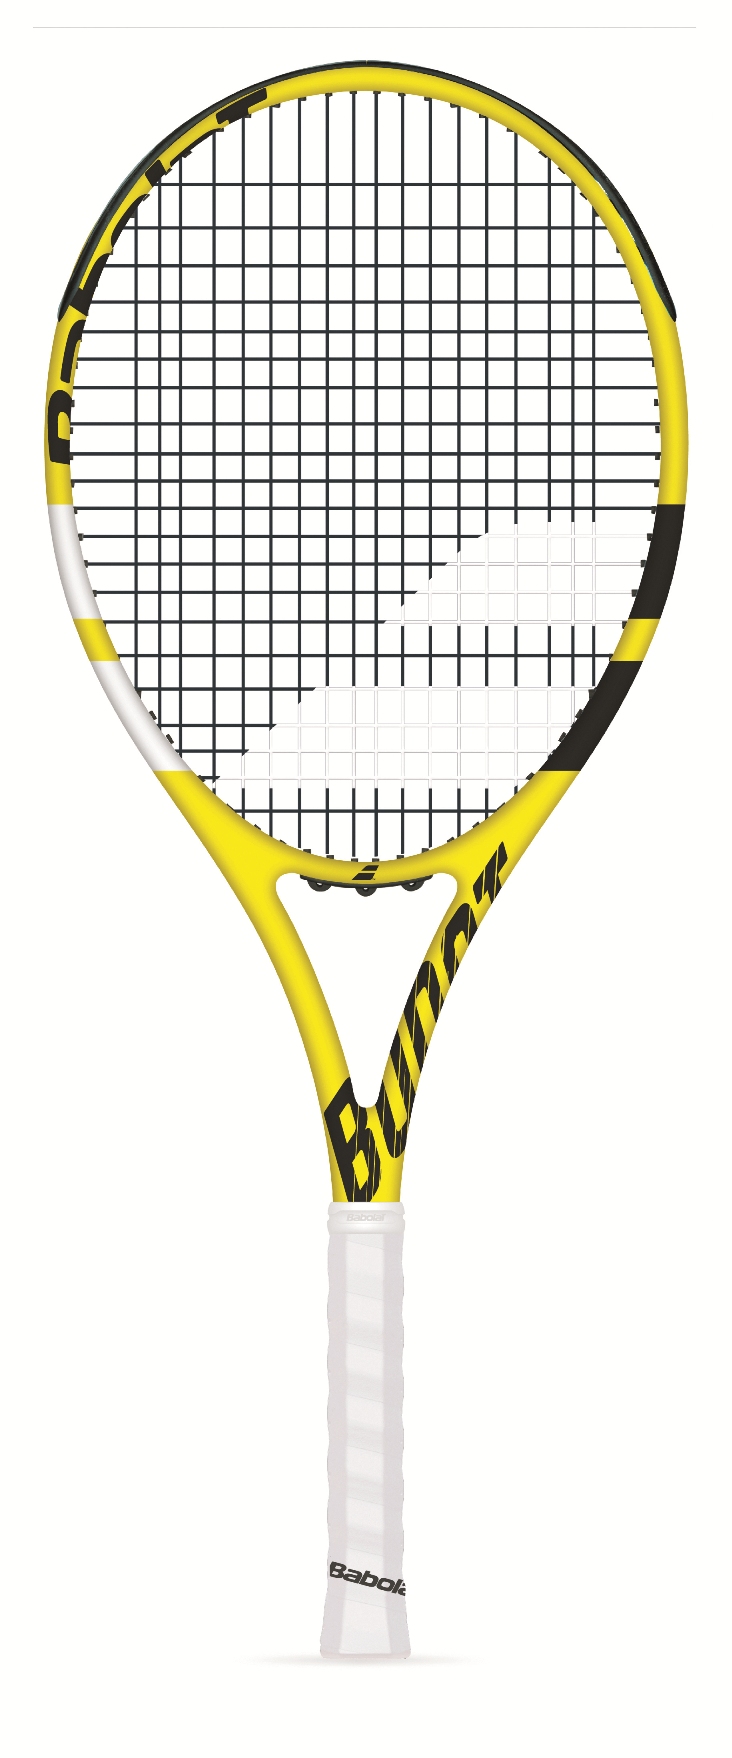 Babolat Boost A (Aero) Tennis Racquet